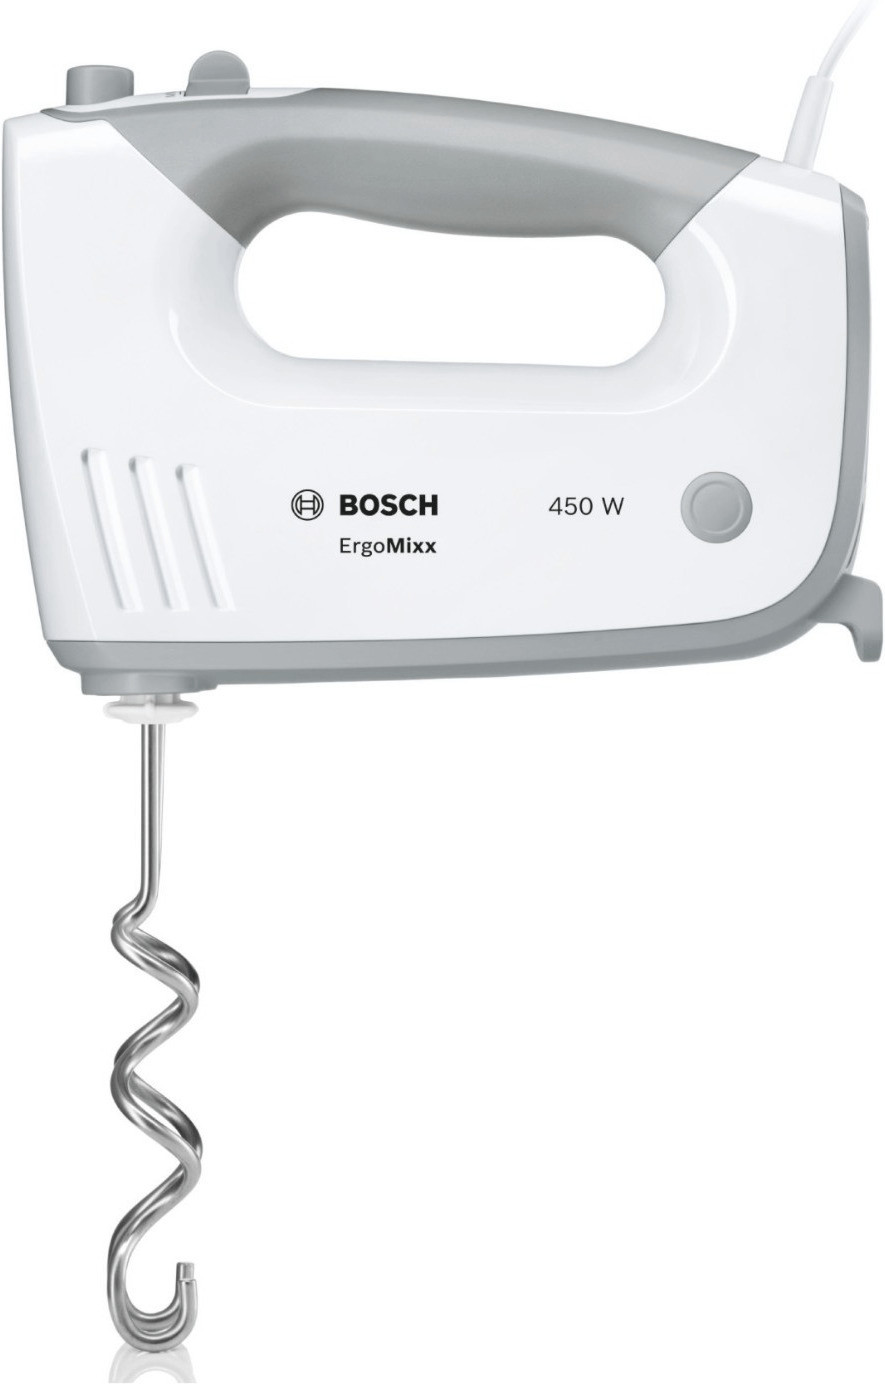 ErgoMixx € ab MFQ36440 Bosch 37,90 | Preisvergleich bei